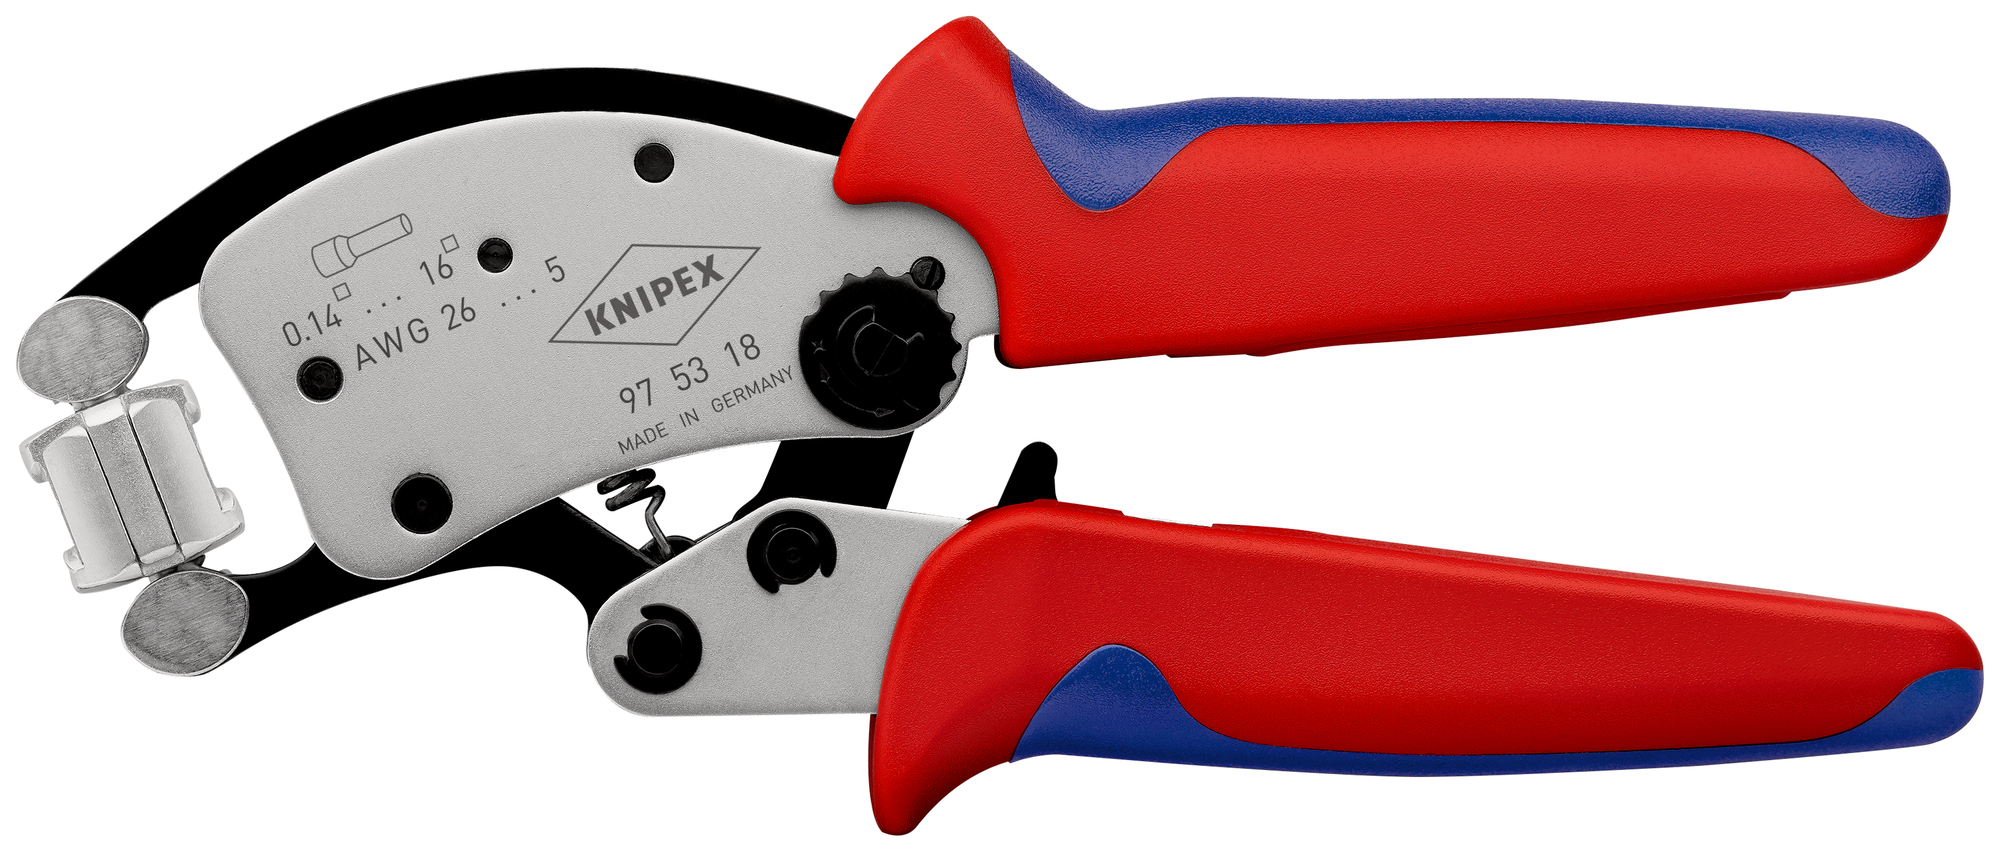 Samonastaviteľné kliešte Knipex Twistor16 SB pre lisovanie káblových koncoviek